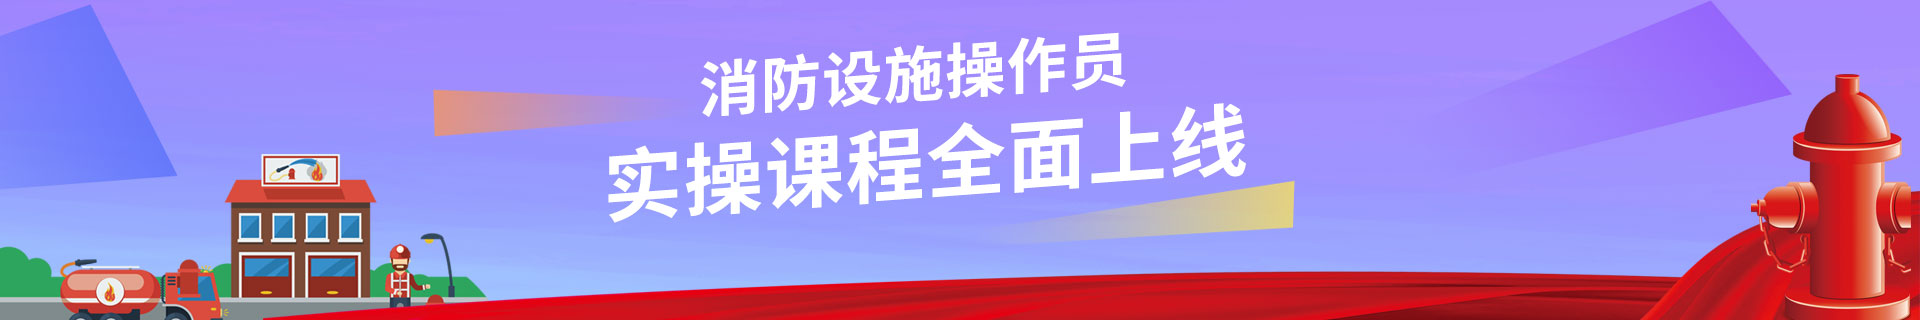 漳州优路消防设施操作员培训机构